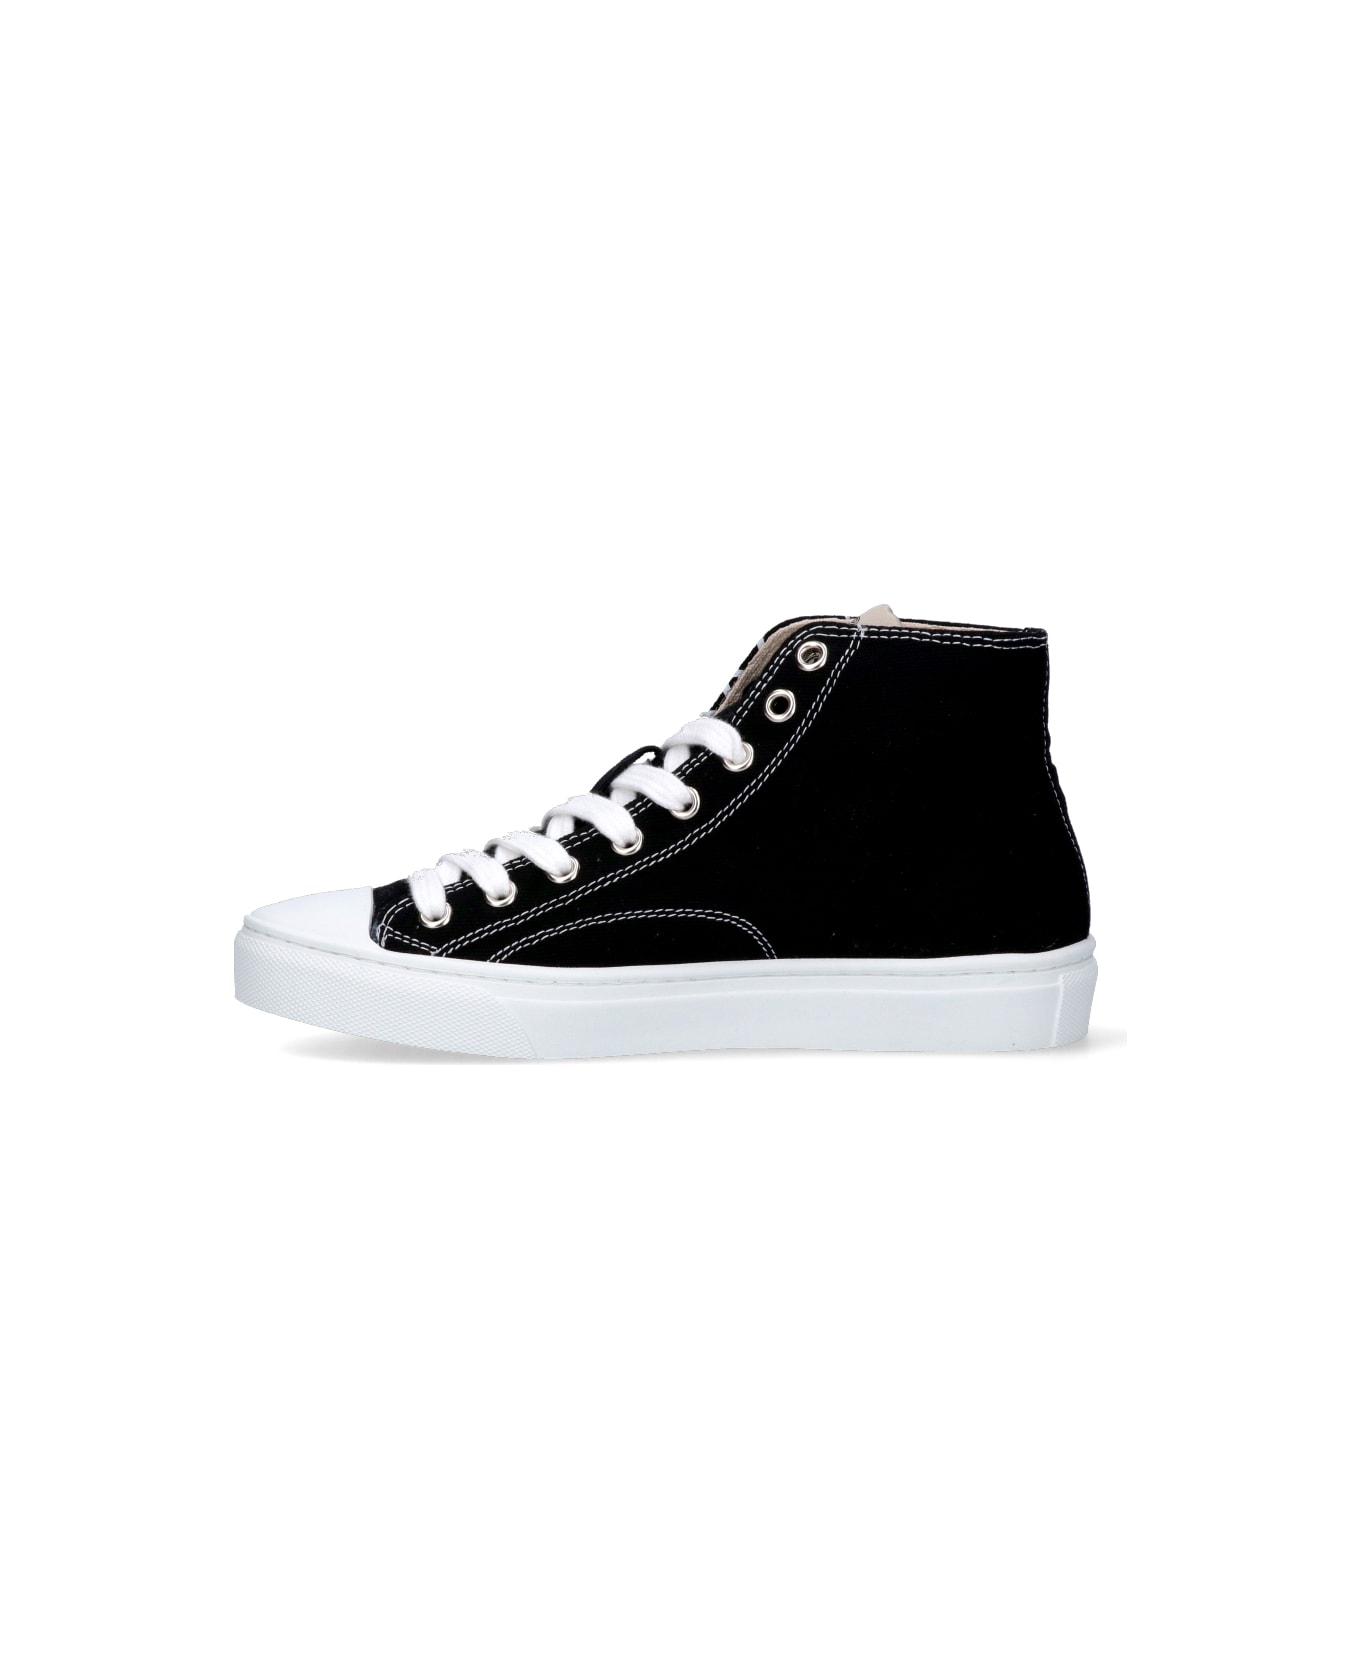 Vivienne Westwood 'plimsoll' High Sneakers - Black   スニーカー